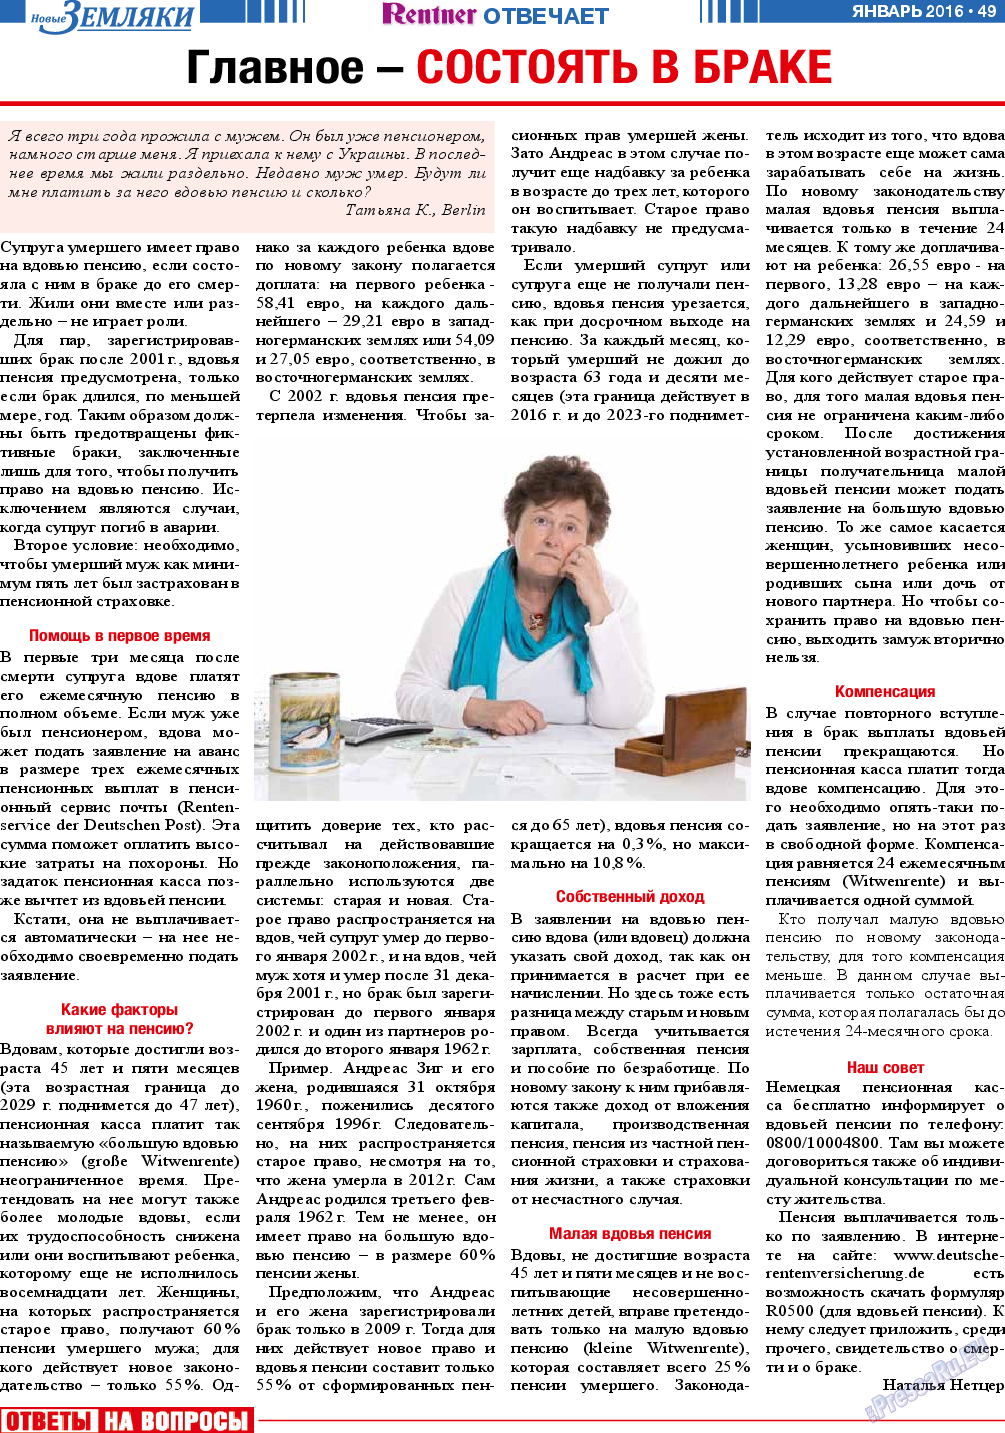 Новые Земляки, газета. 2016 №1 стр.49